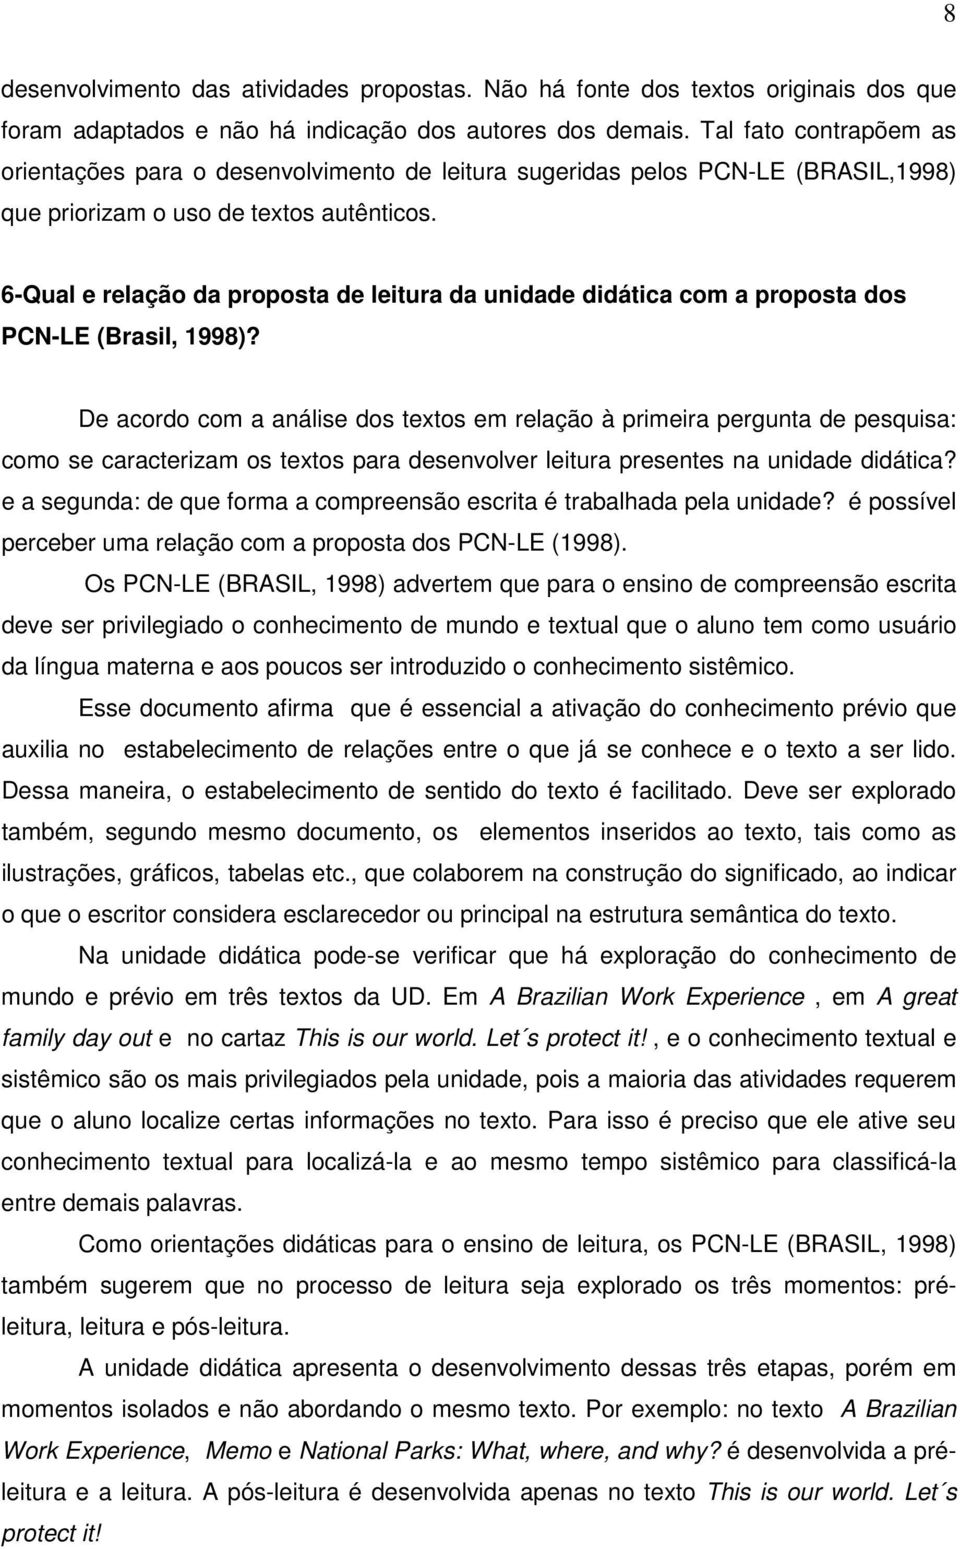 6-Qual e relação da proposta de leitura da unidade didática com a proposta dos PCN-LE (Brasil, 1998)?